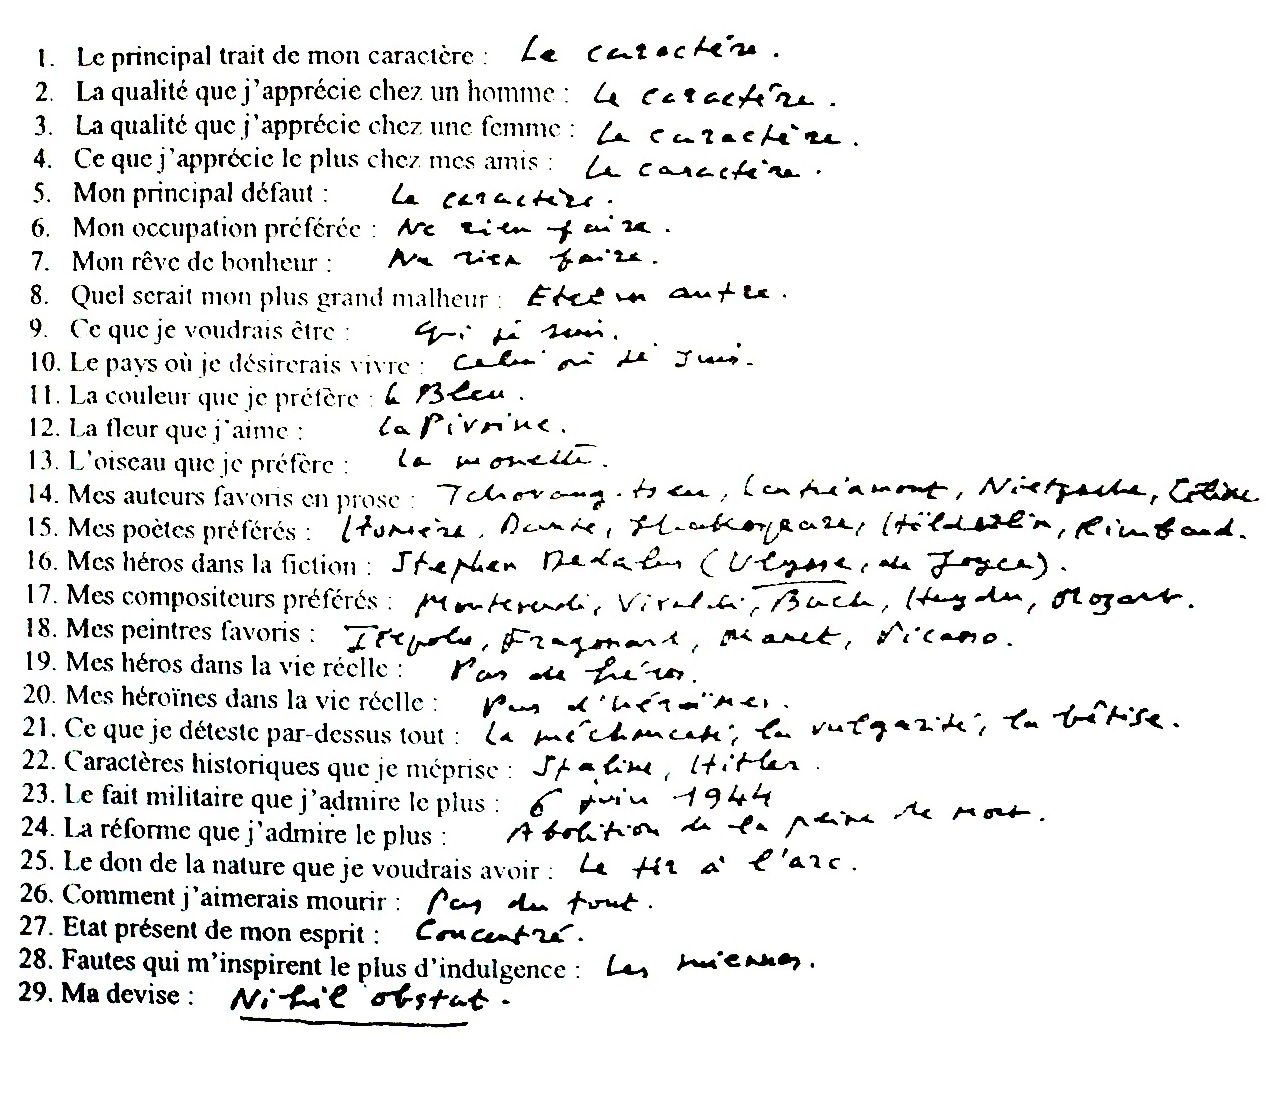 Questionnaire de Proust